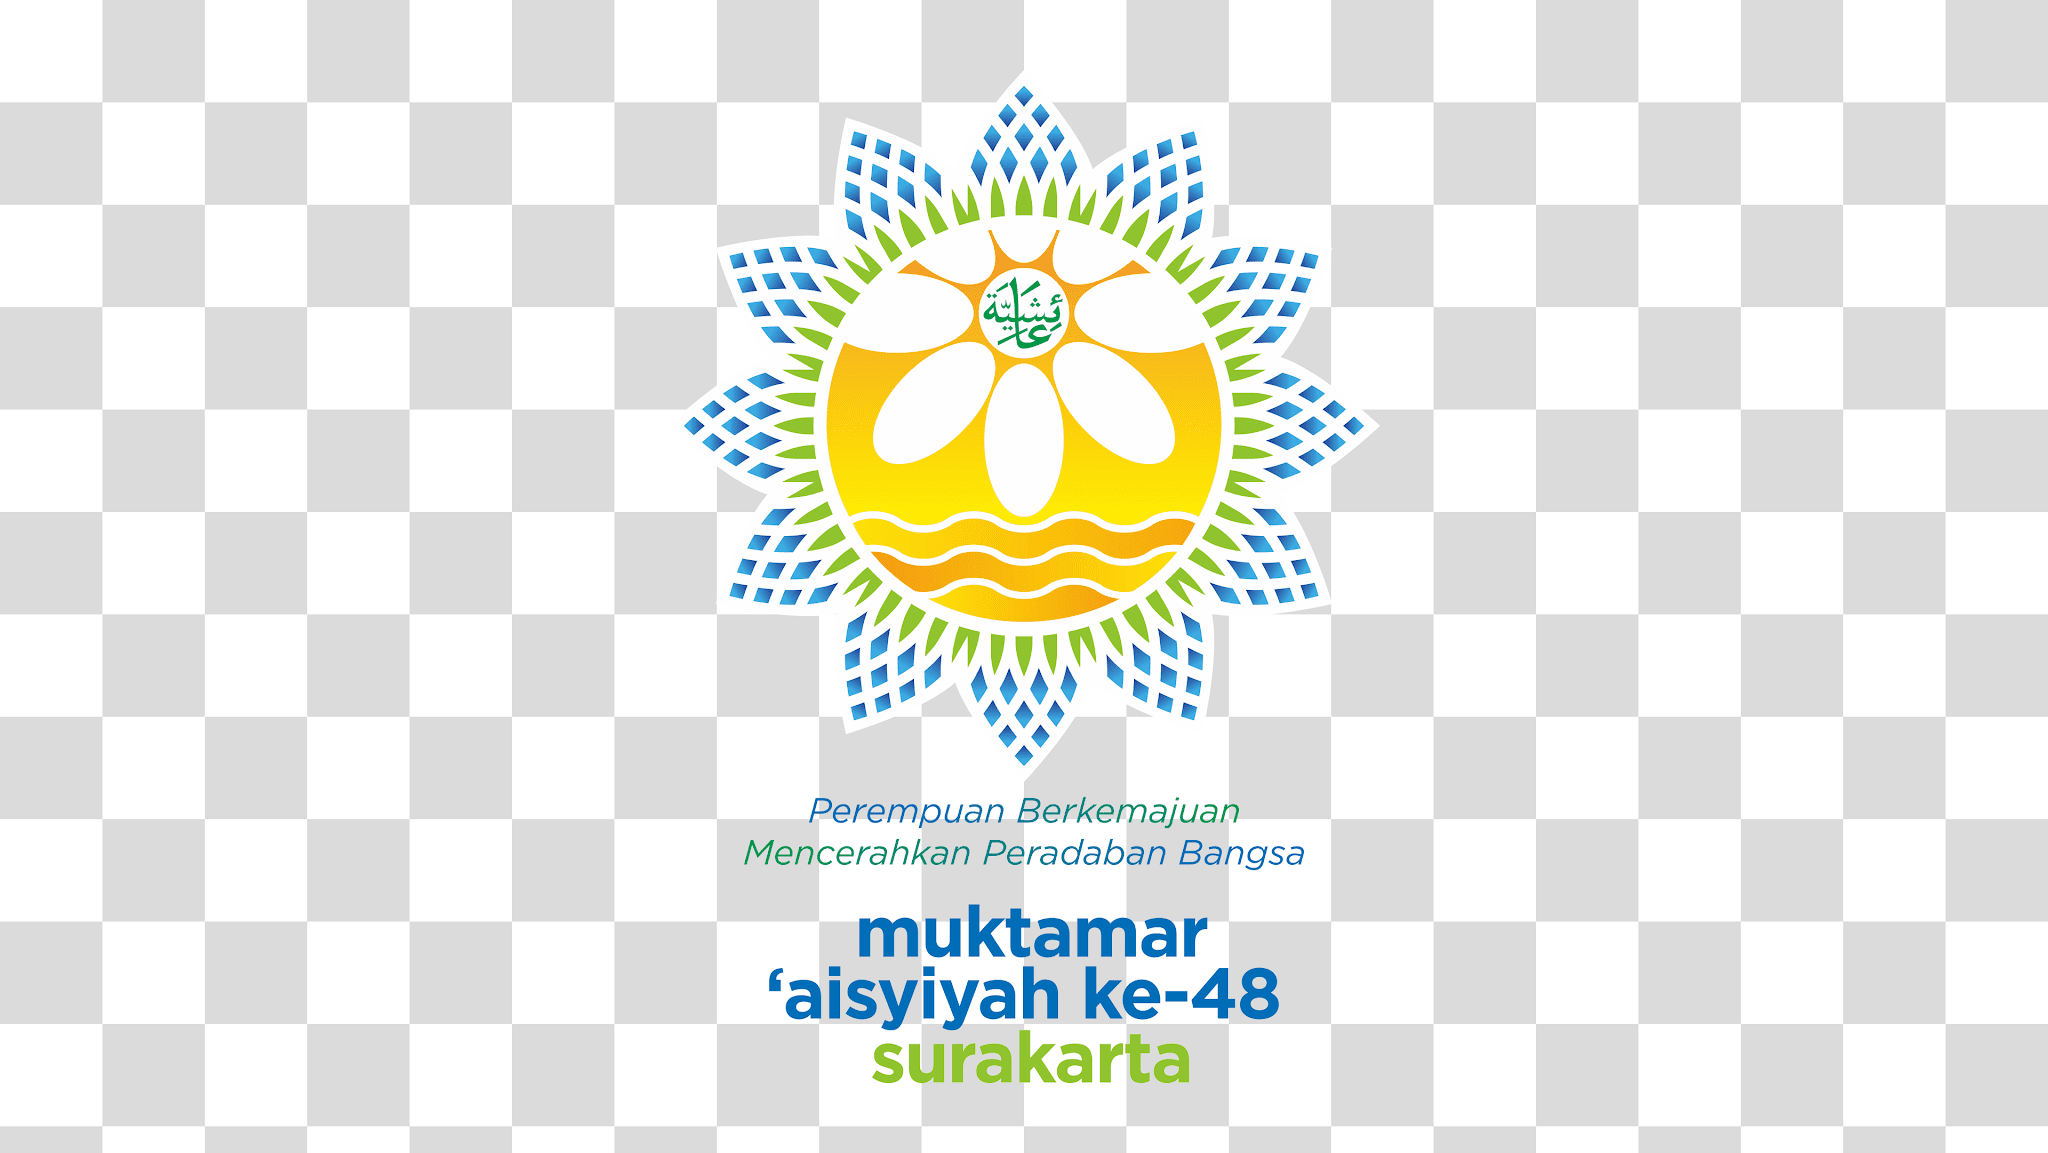 Muktamar Aisyiyah ke-48 Surakarta Logo PNG Transparent Image